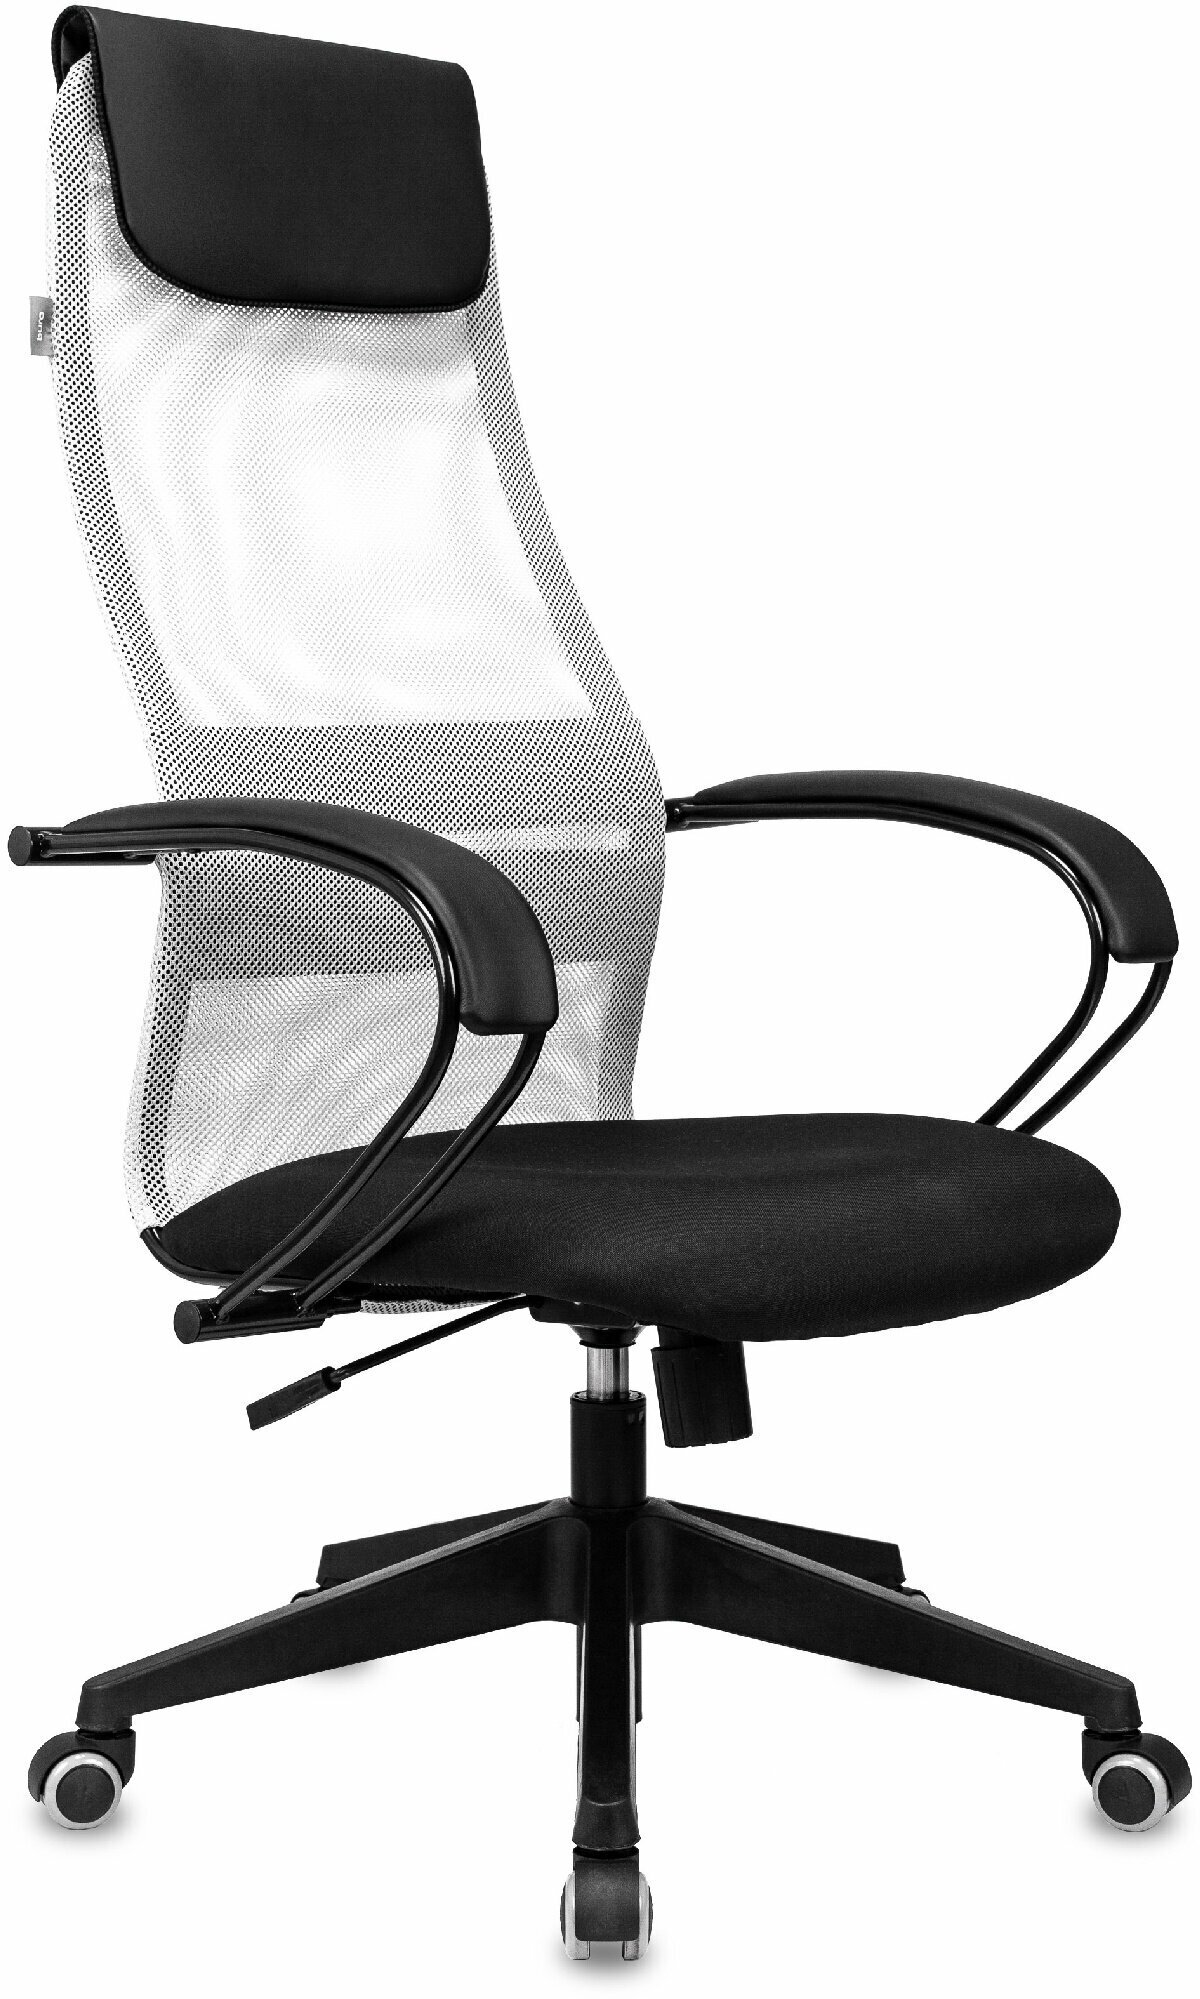 Кресло руководителя CH-607 светло-серый/черный сетка/ткань с подголов. крестов. пластик / Компьютерное кресло для директора, начальника, менеджера